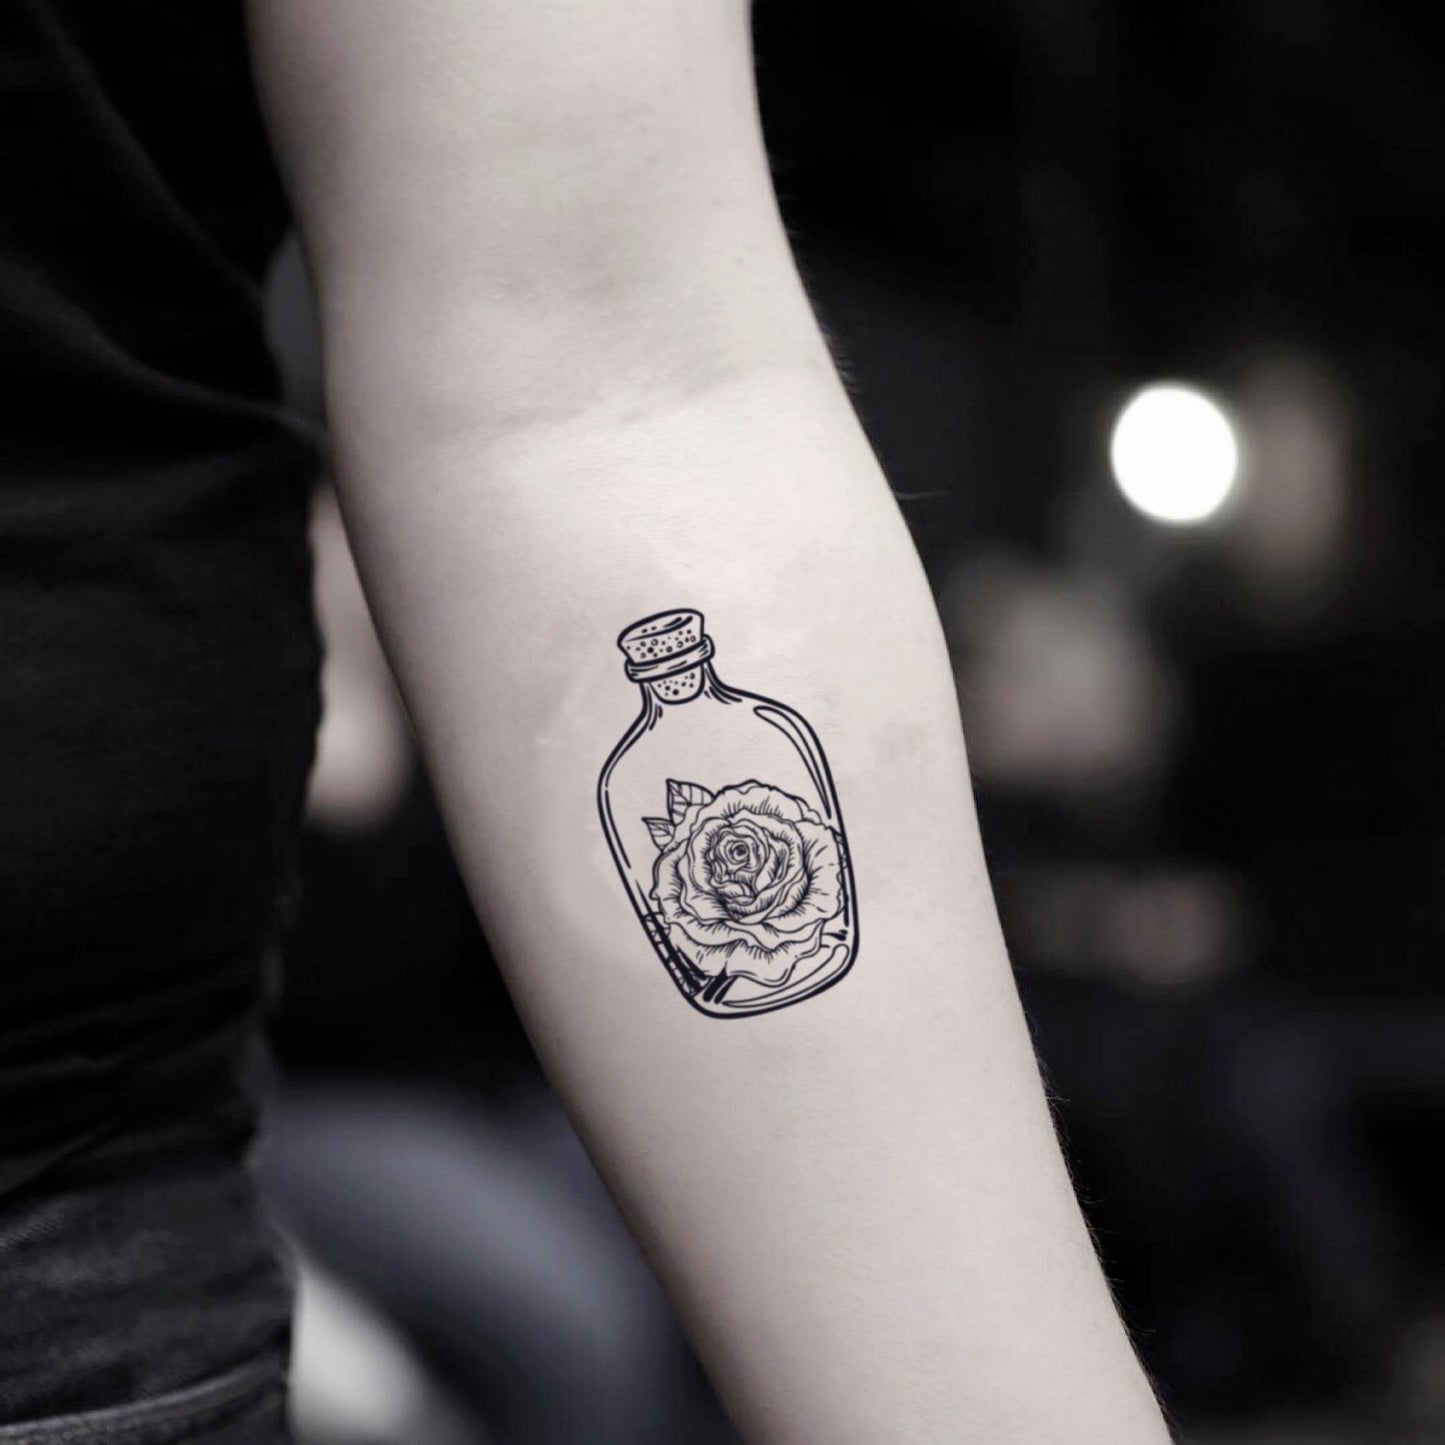 fake small rose bottle flower temporary tattoo sticker design idea on inner arm